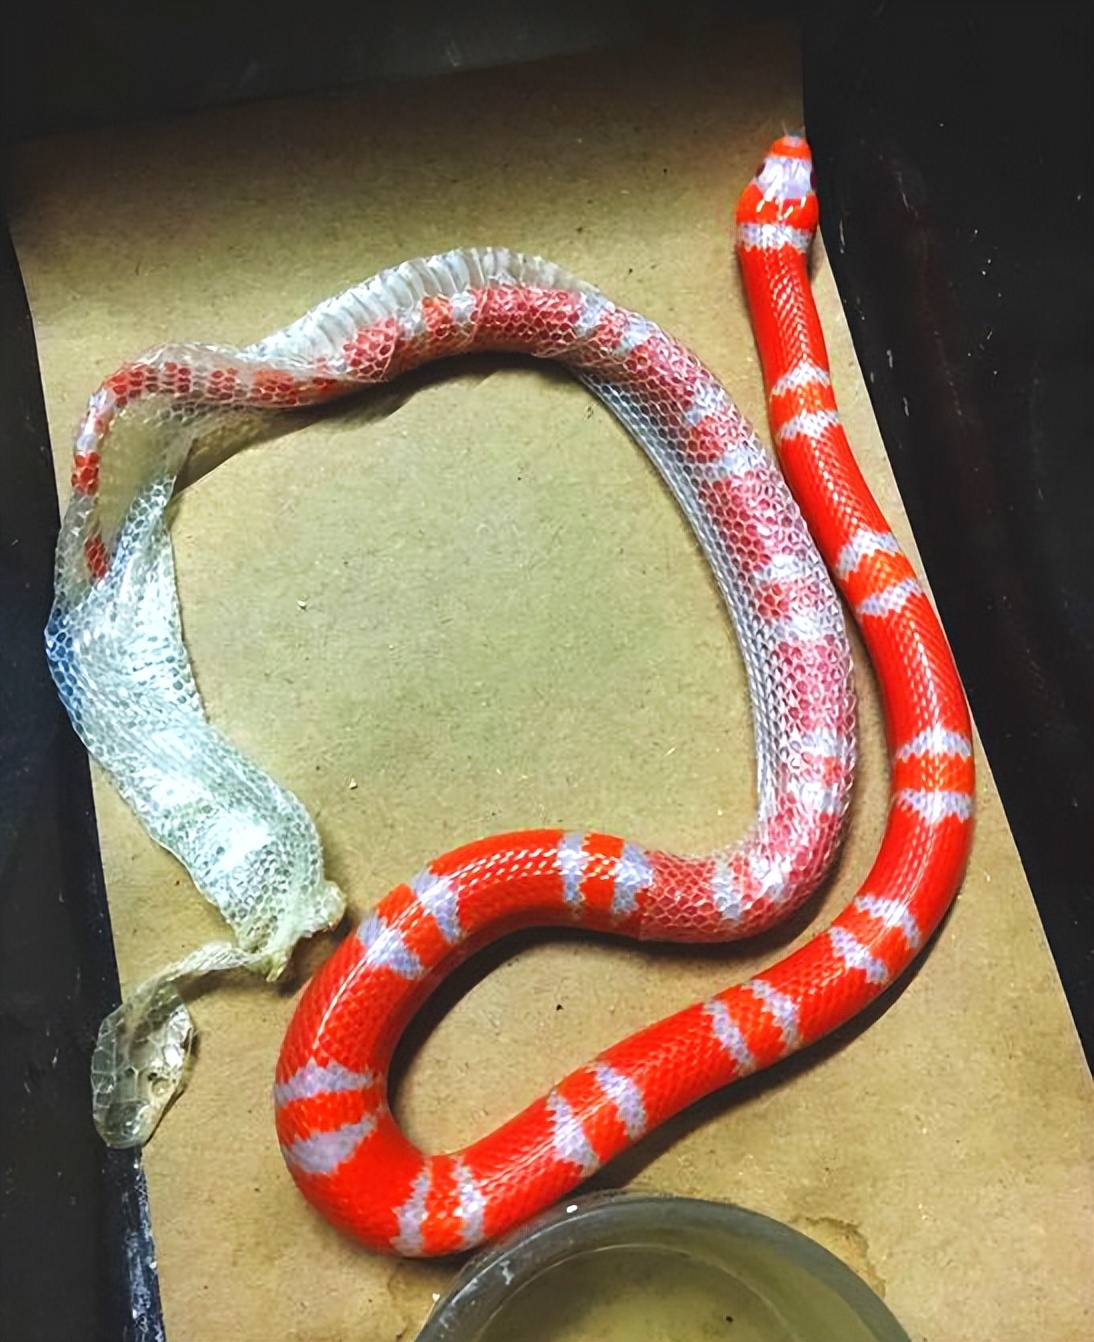 洪都拉斯奶蛇基因图片